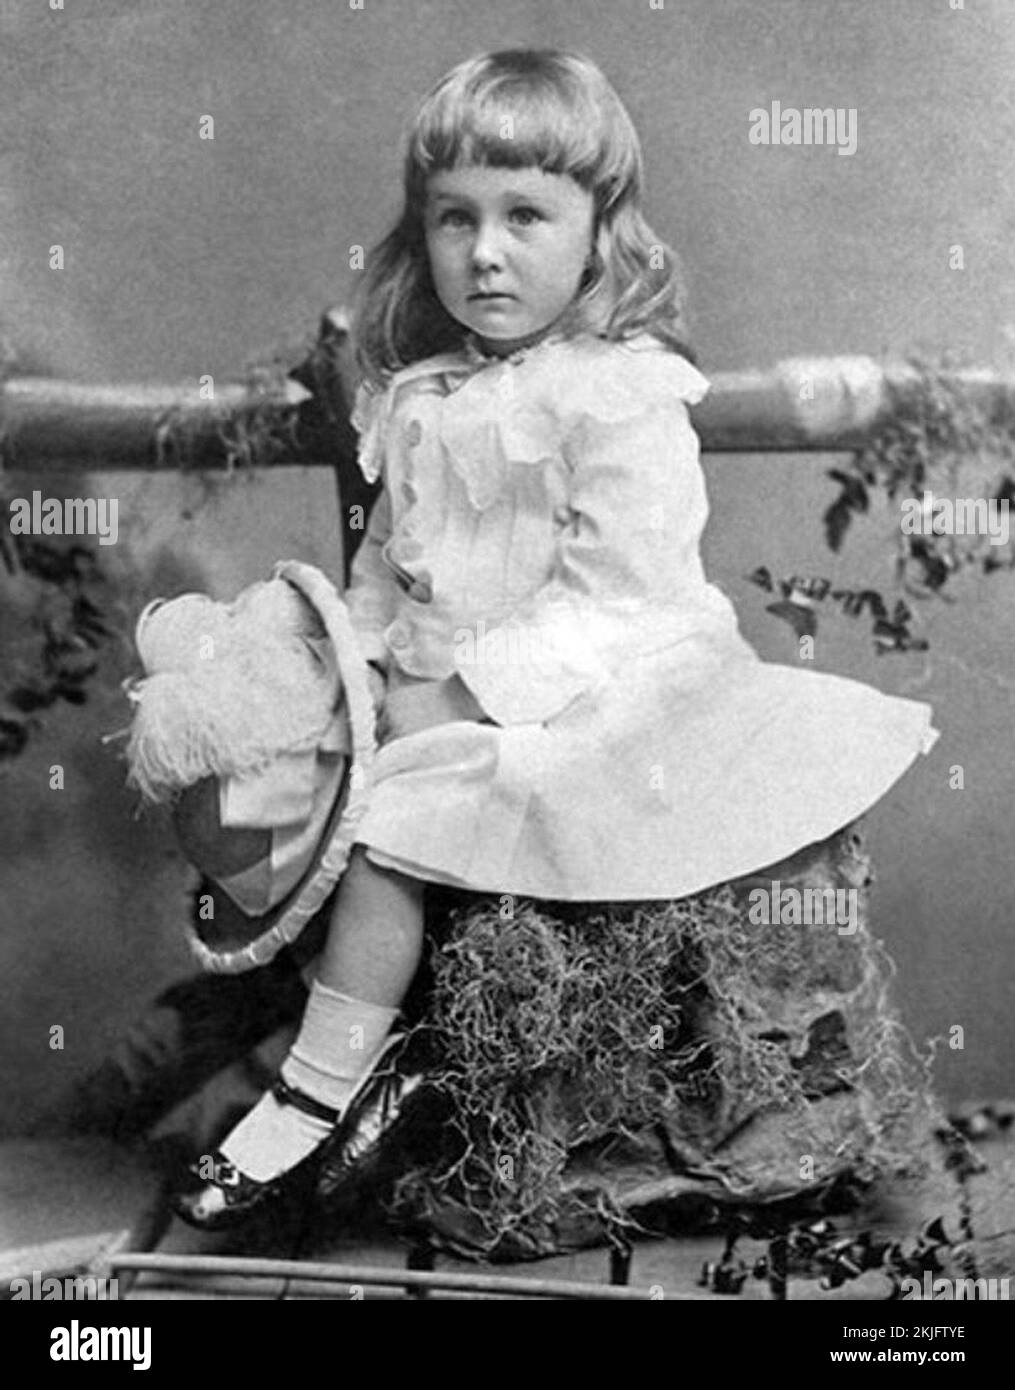 Präsident Franklin Roosevelt 1884, 2 Jahre alt. Er wurde nicht verletzt - in dieser Zeit trugen die Jungen Kleider, bis sie verletzt wurden - also in Hosen gesteckt, was ein wichtiger Übergangsritus war Stockfoto